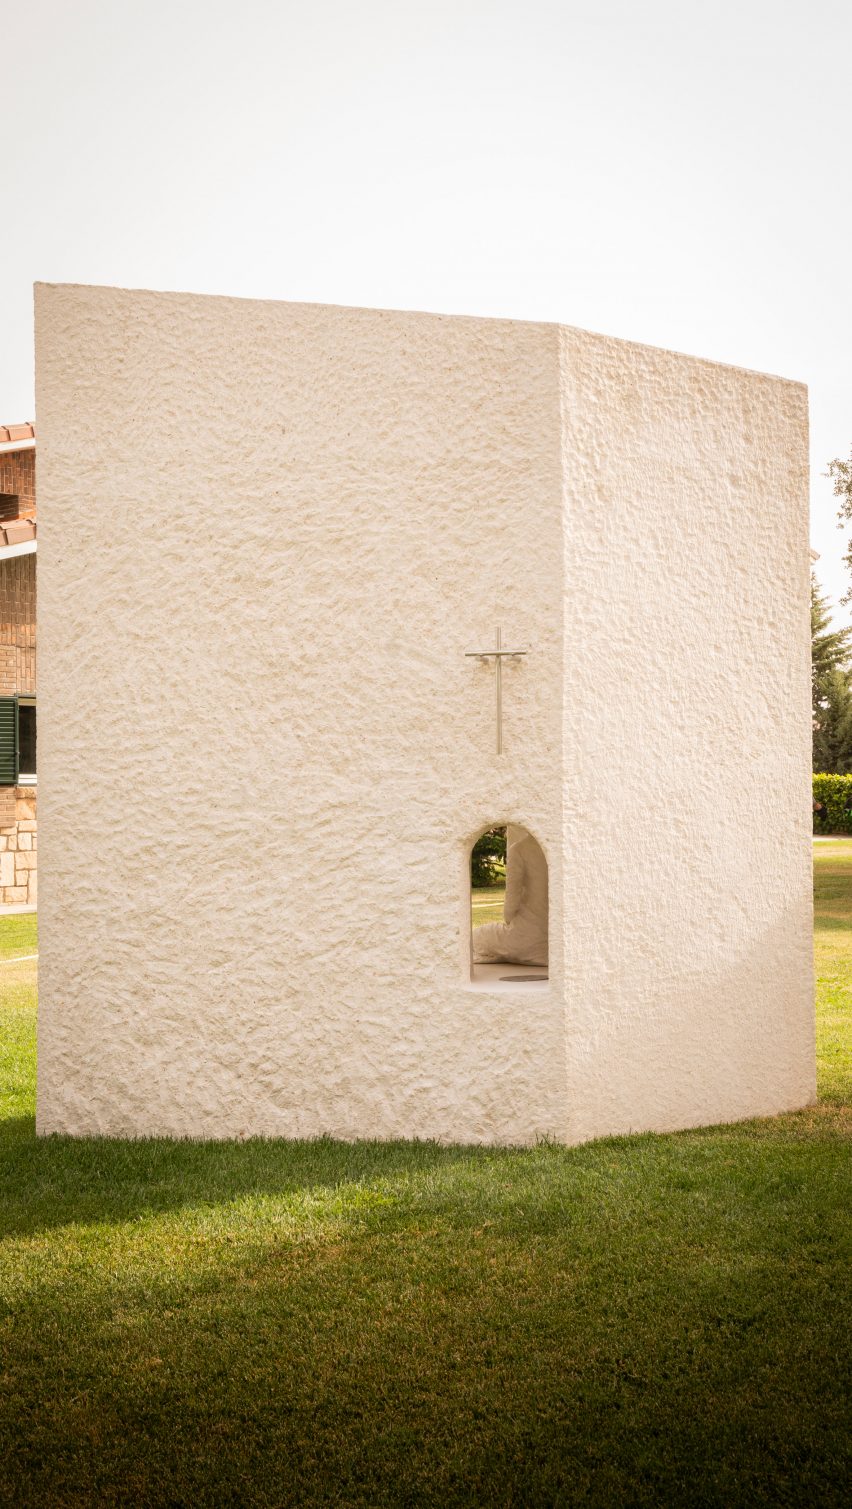 Bush-hammered concrete facade of La Ermita de Lola by Ramos Alderete